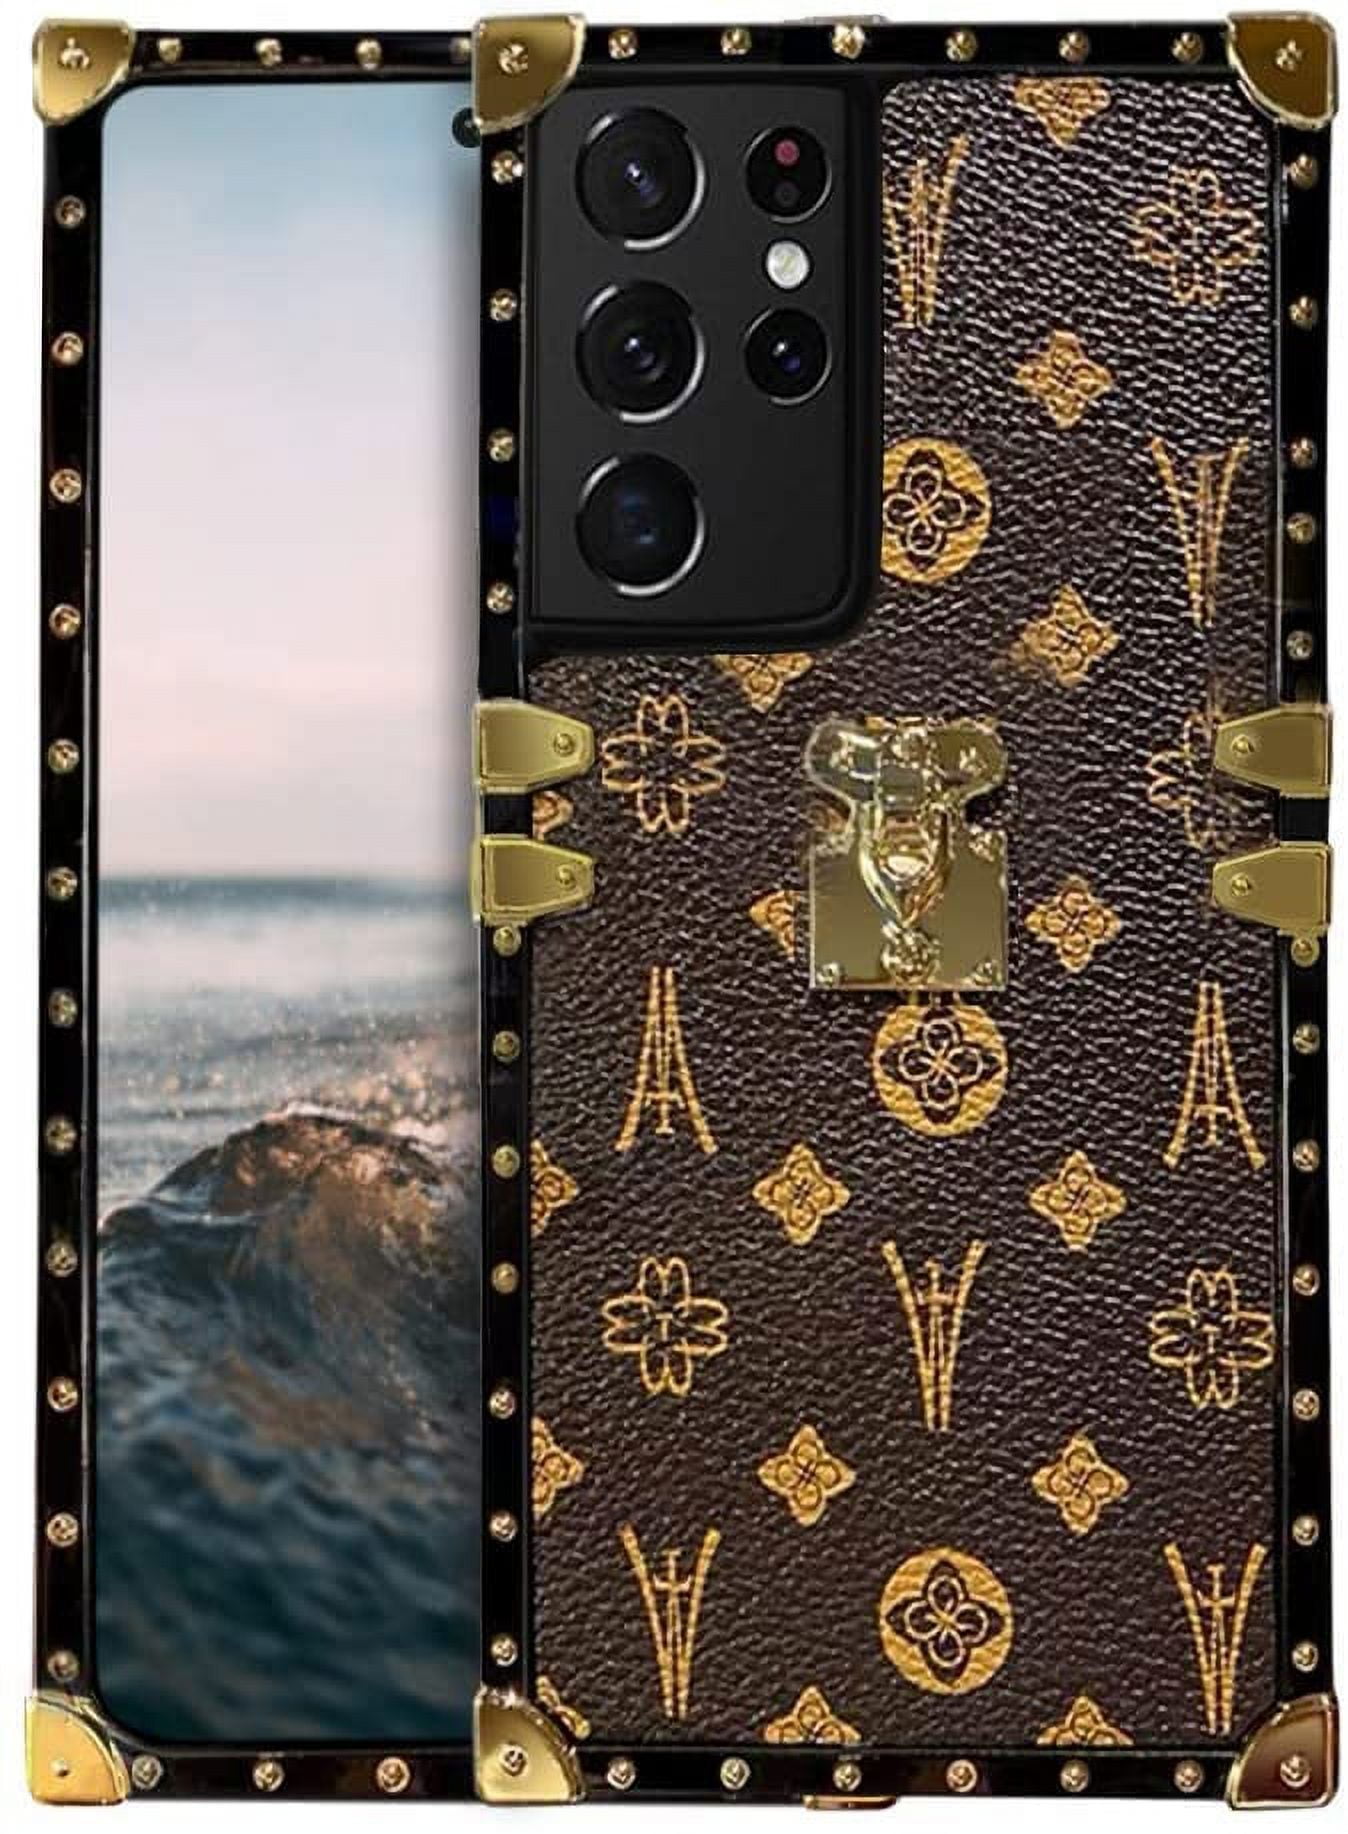 Louis Vuitton Samsung S21 Ultra Case LV S21 Case